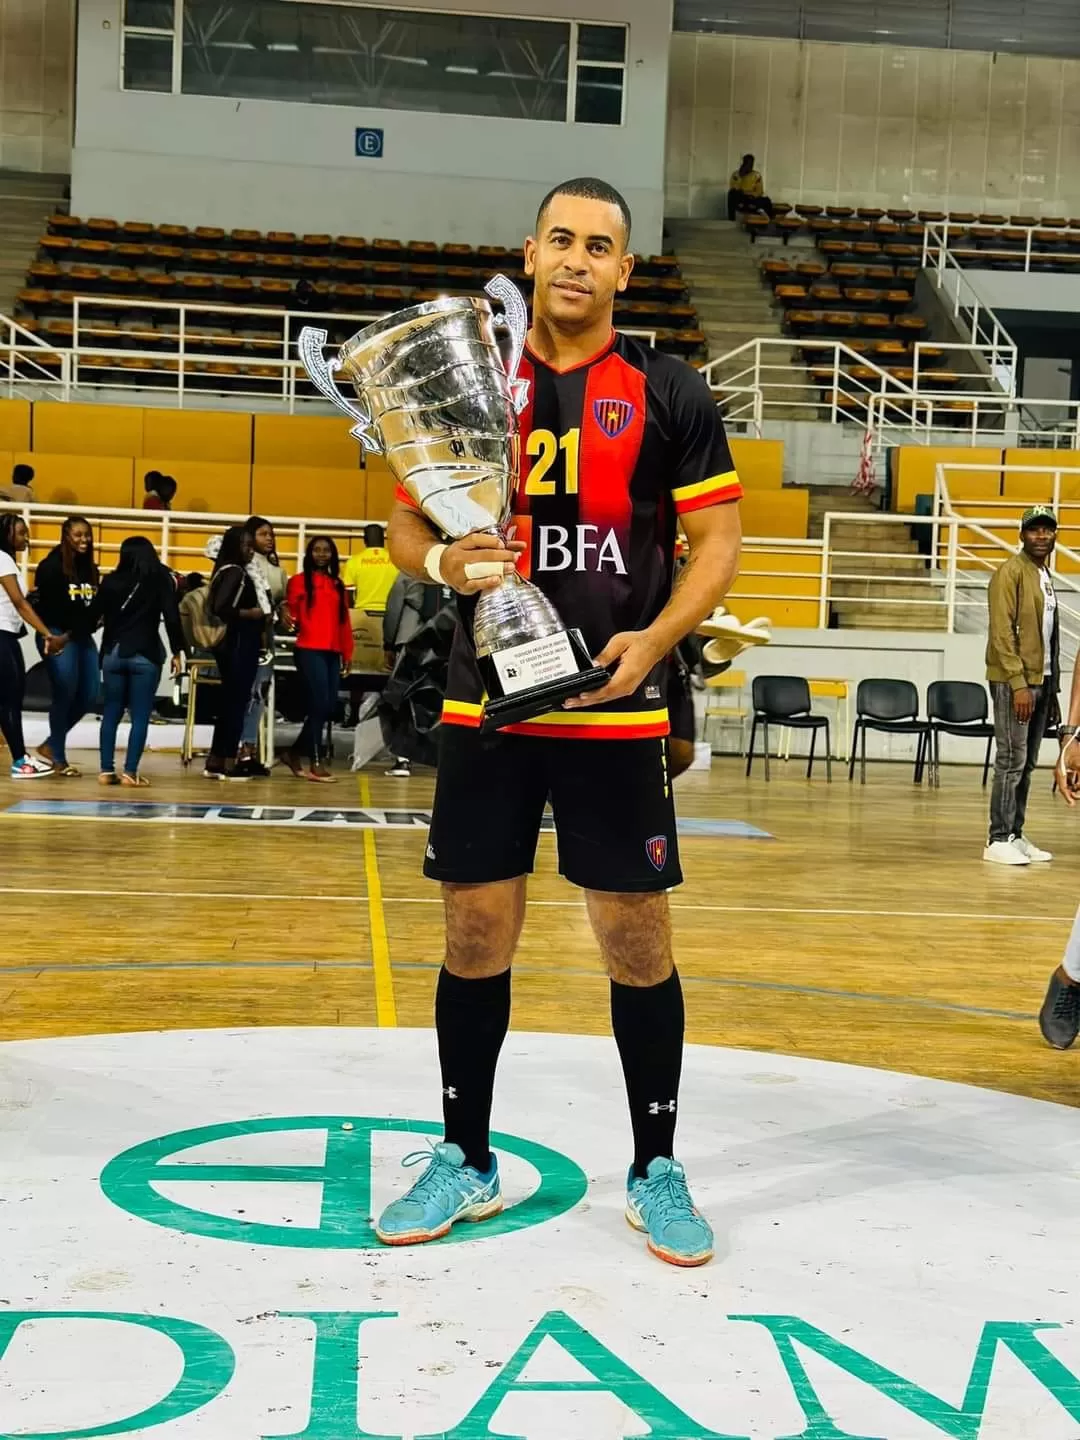 Basquetebol: Petro de Luanda vence 1.º de Agosto e conquista Taça de Angola  - Ver Angola - Diariamente, o melhor de Angola